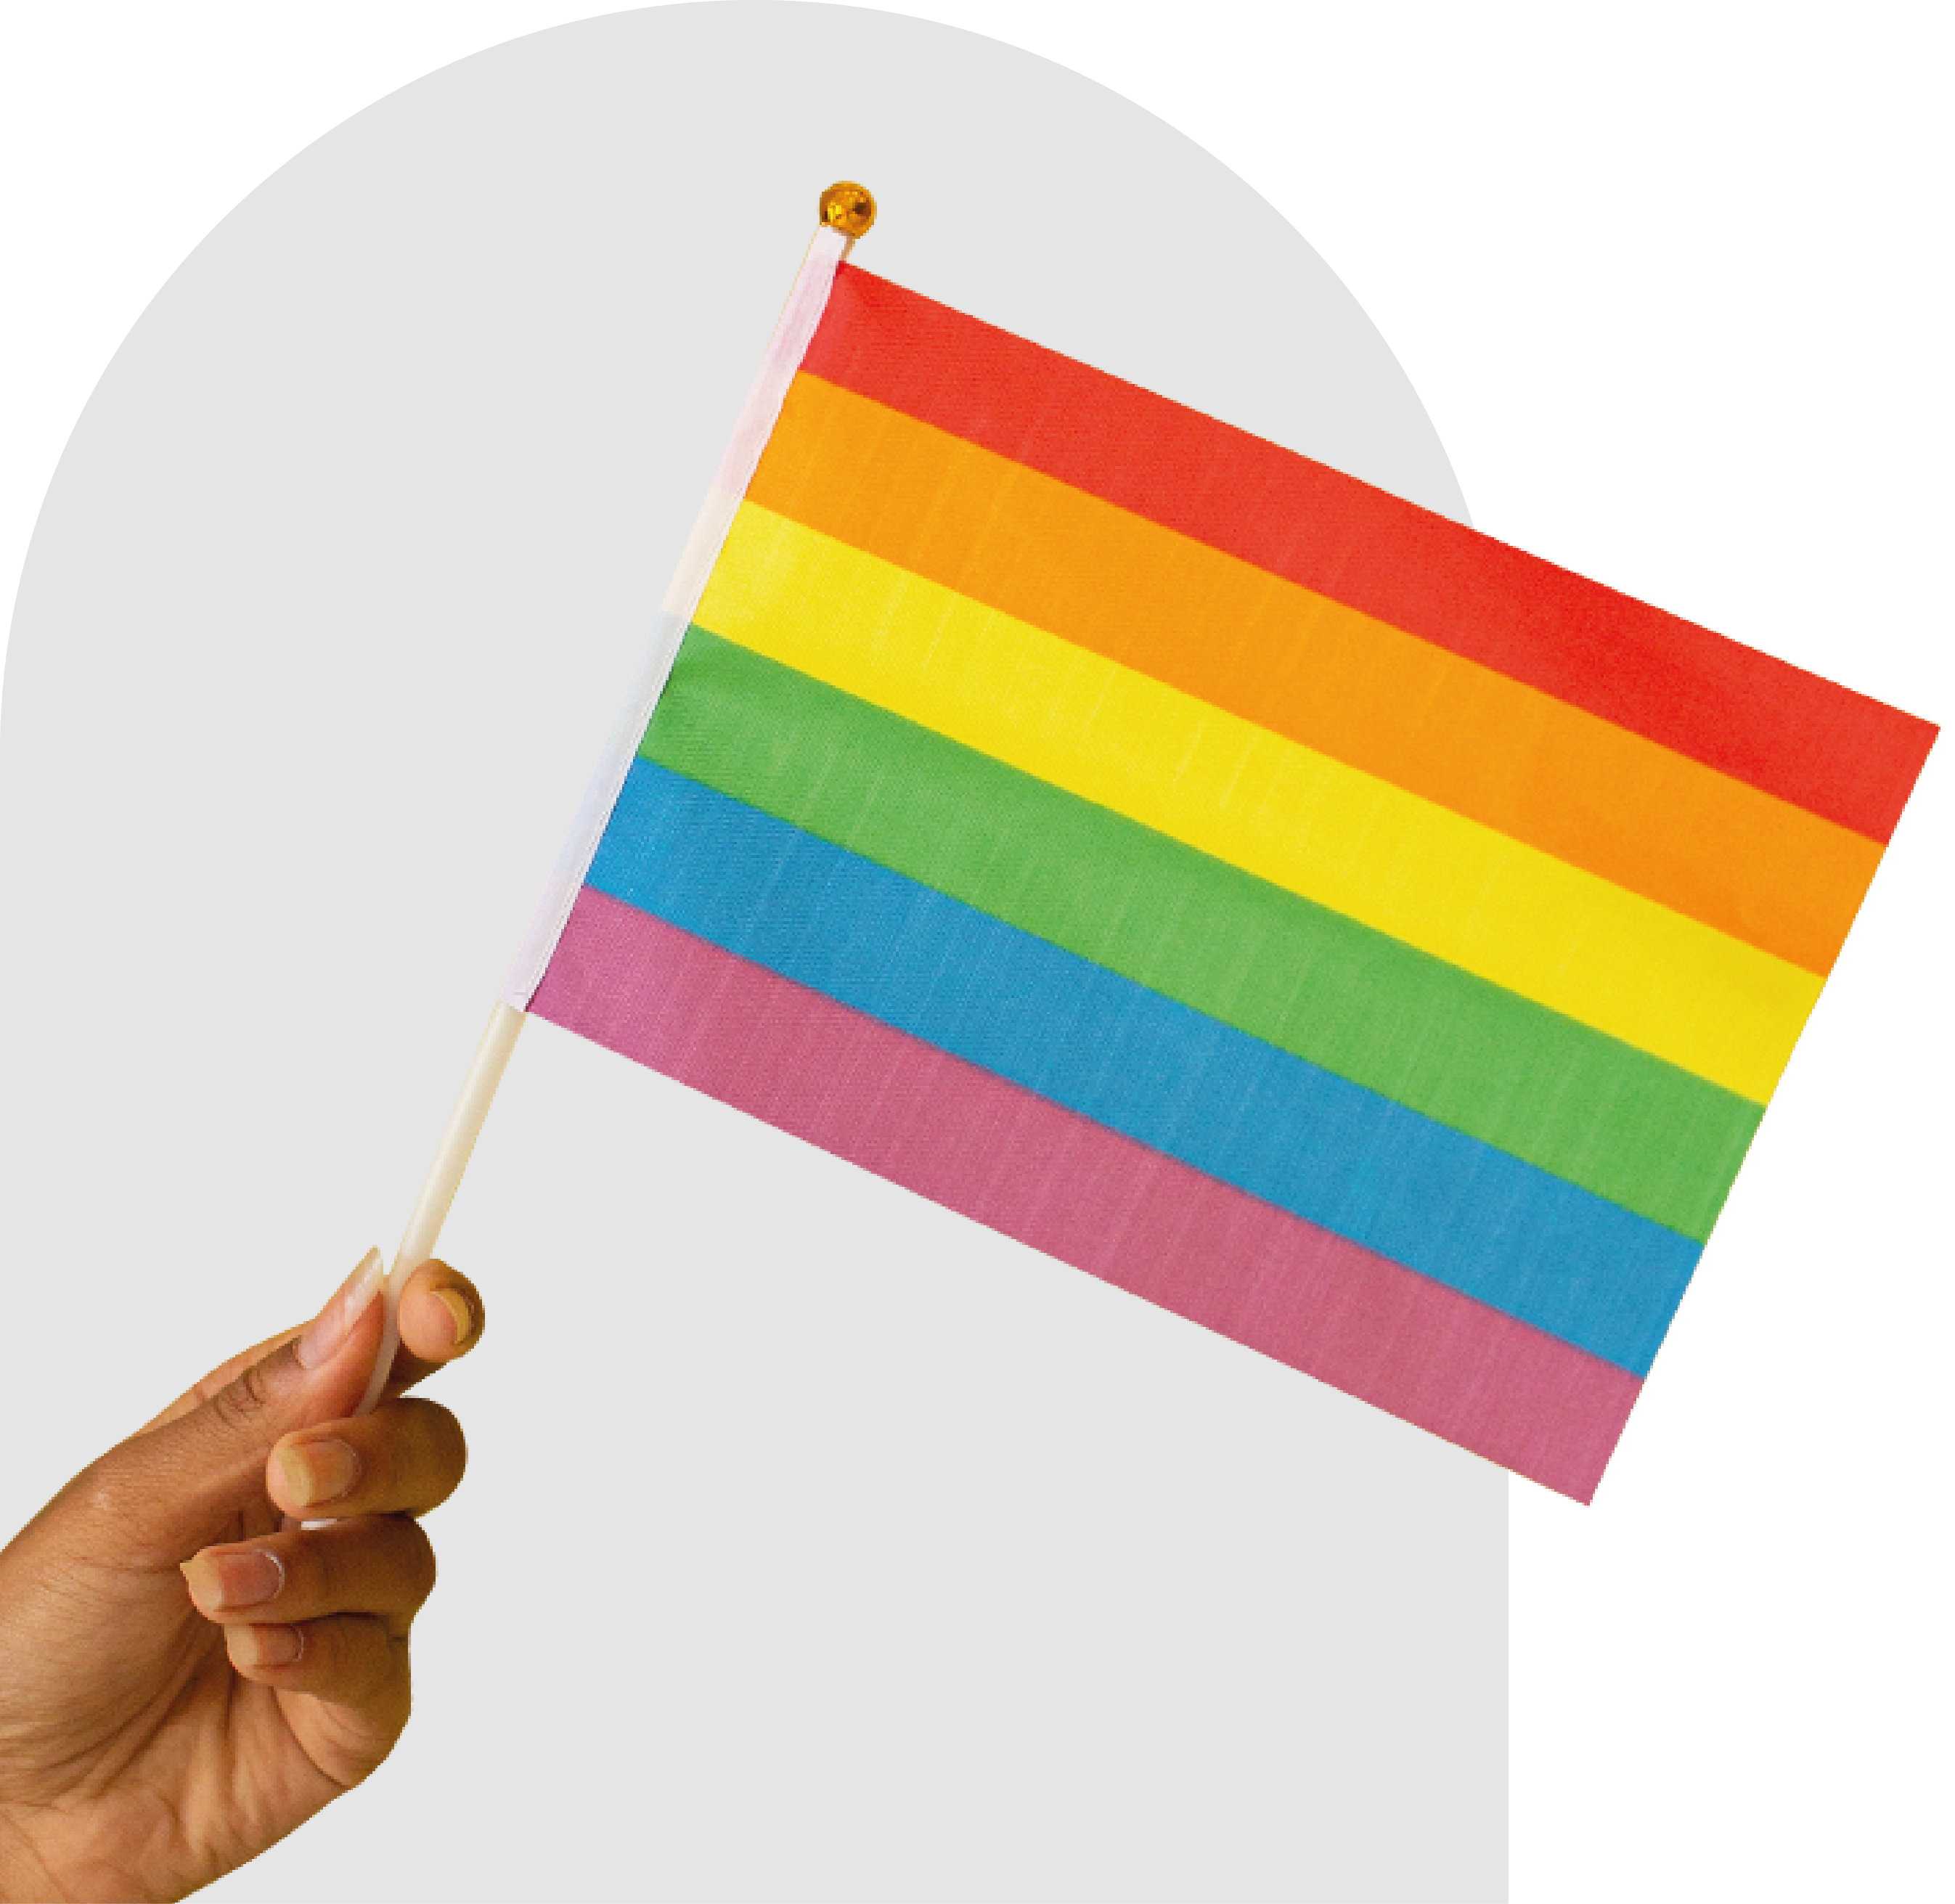 Foto de uma mão segurando a bandeira LGBTQIA+.